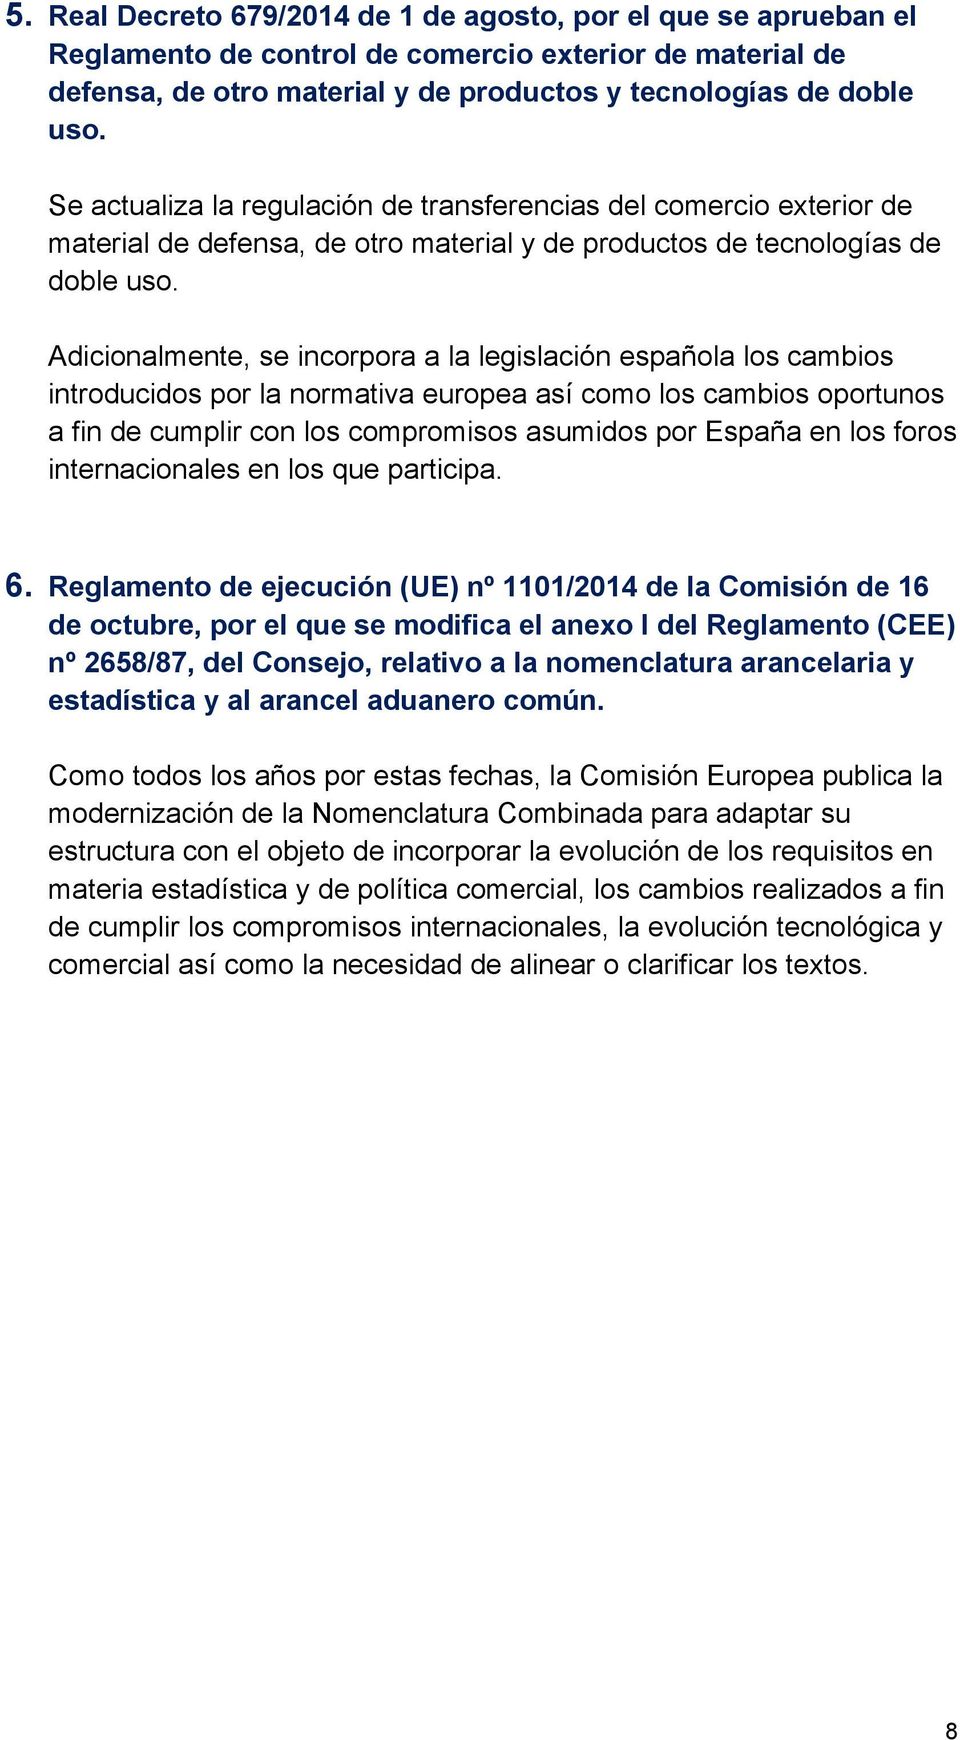 Adicionalmente, se incorpora a la legislación española los cambios introducidos por la normativa europea así como los cambios oportunos a fin de cumplir con los compromisos asumidos por España en los